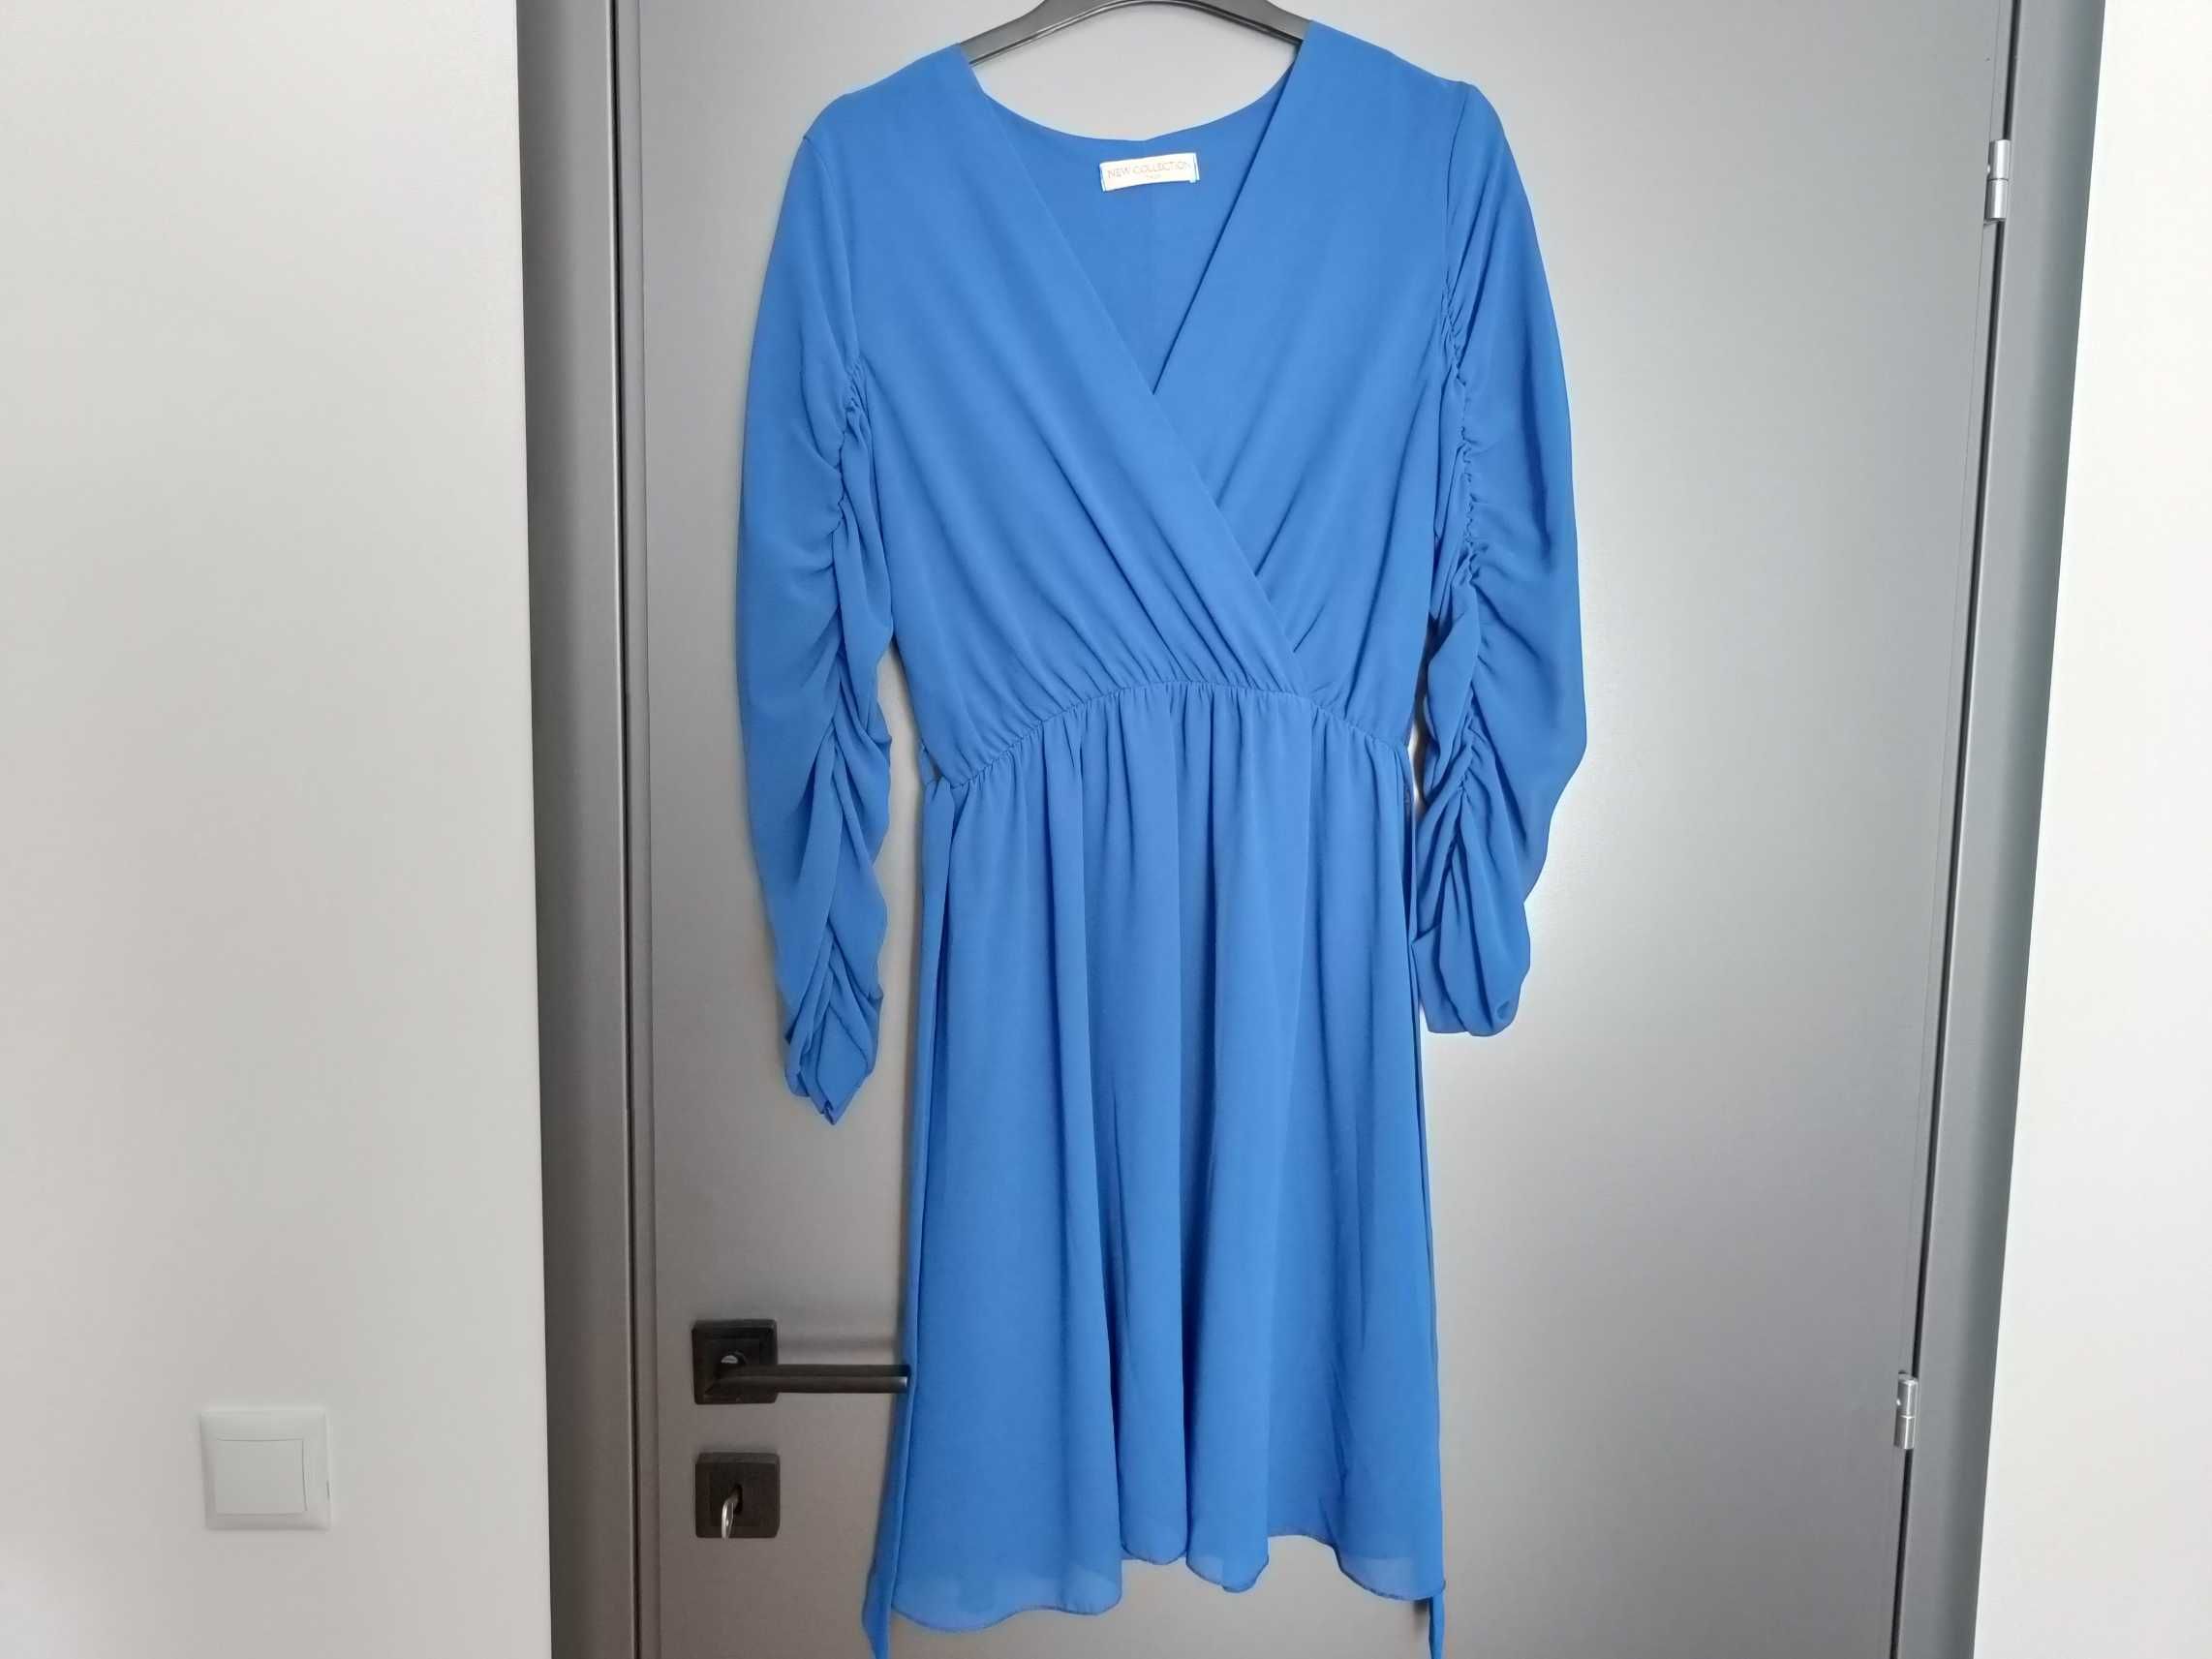 Rochie albastră de vară mărimea universala S-M-L